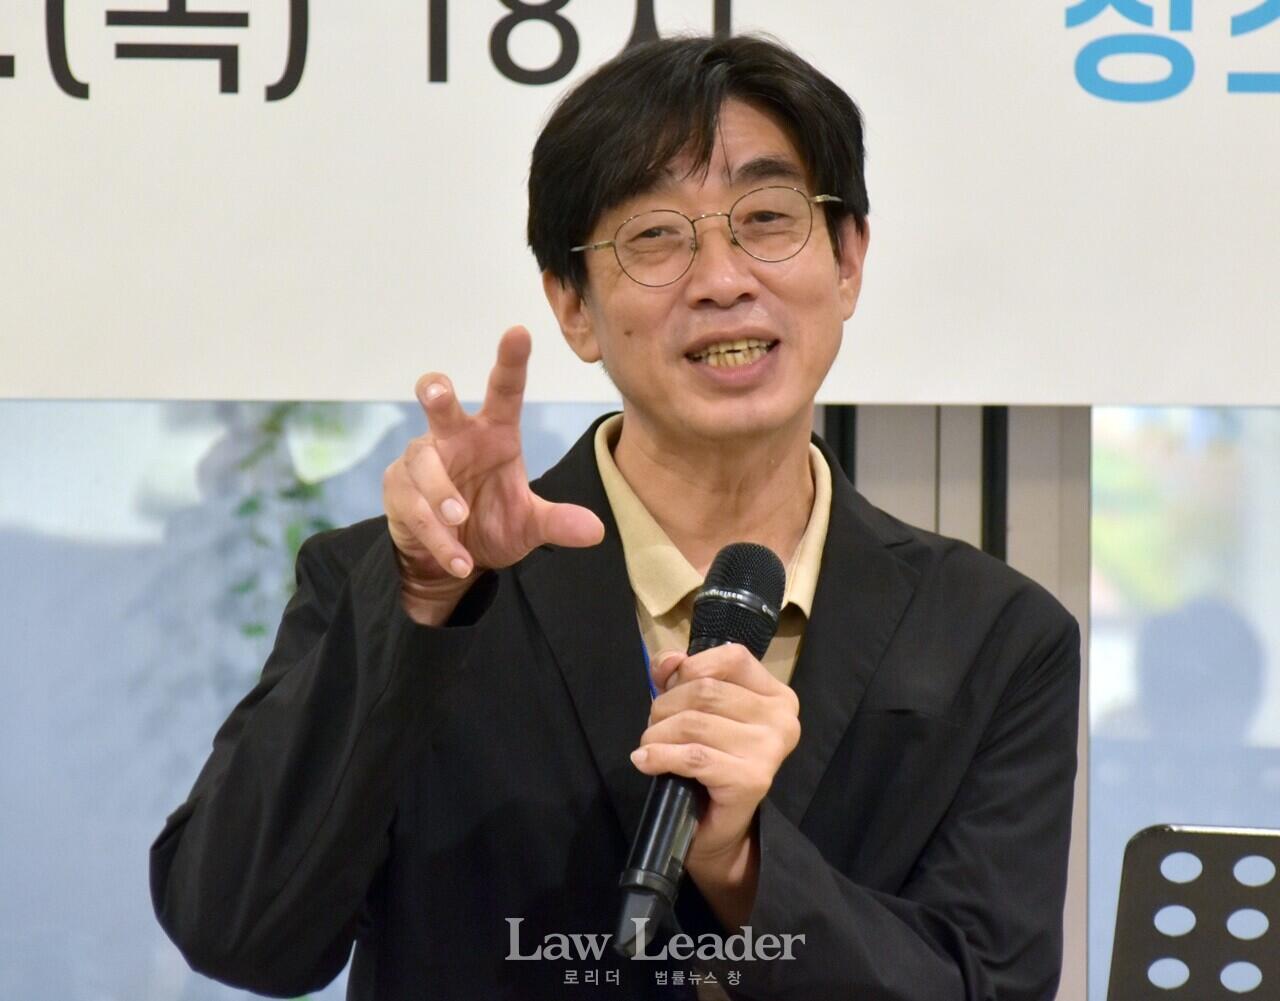 이현곤 변호사(법률사무소 새올 대표)